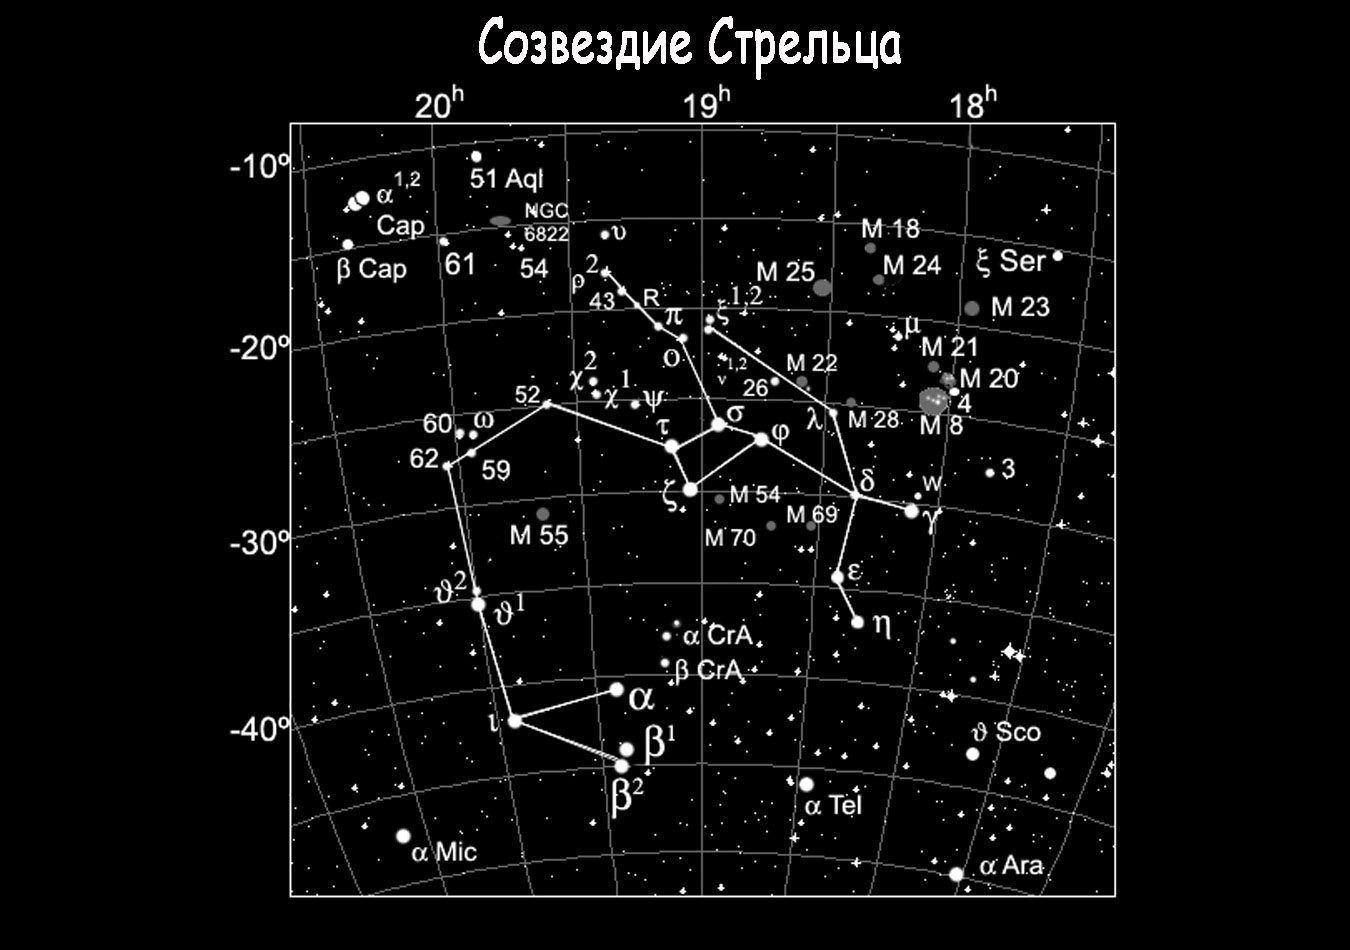 Constellation du Sagittaire